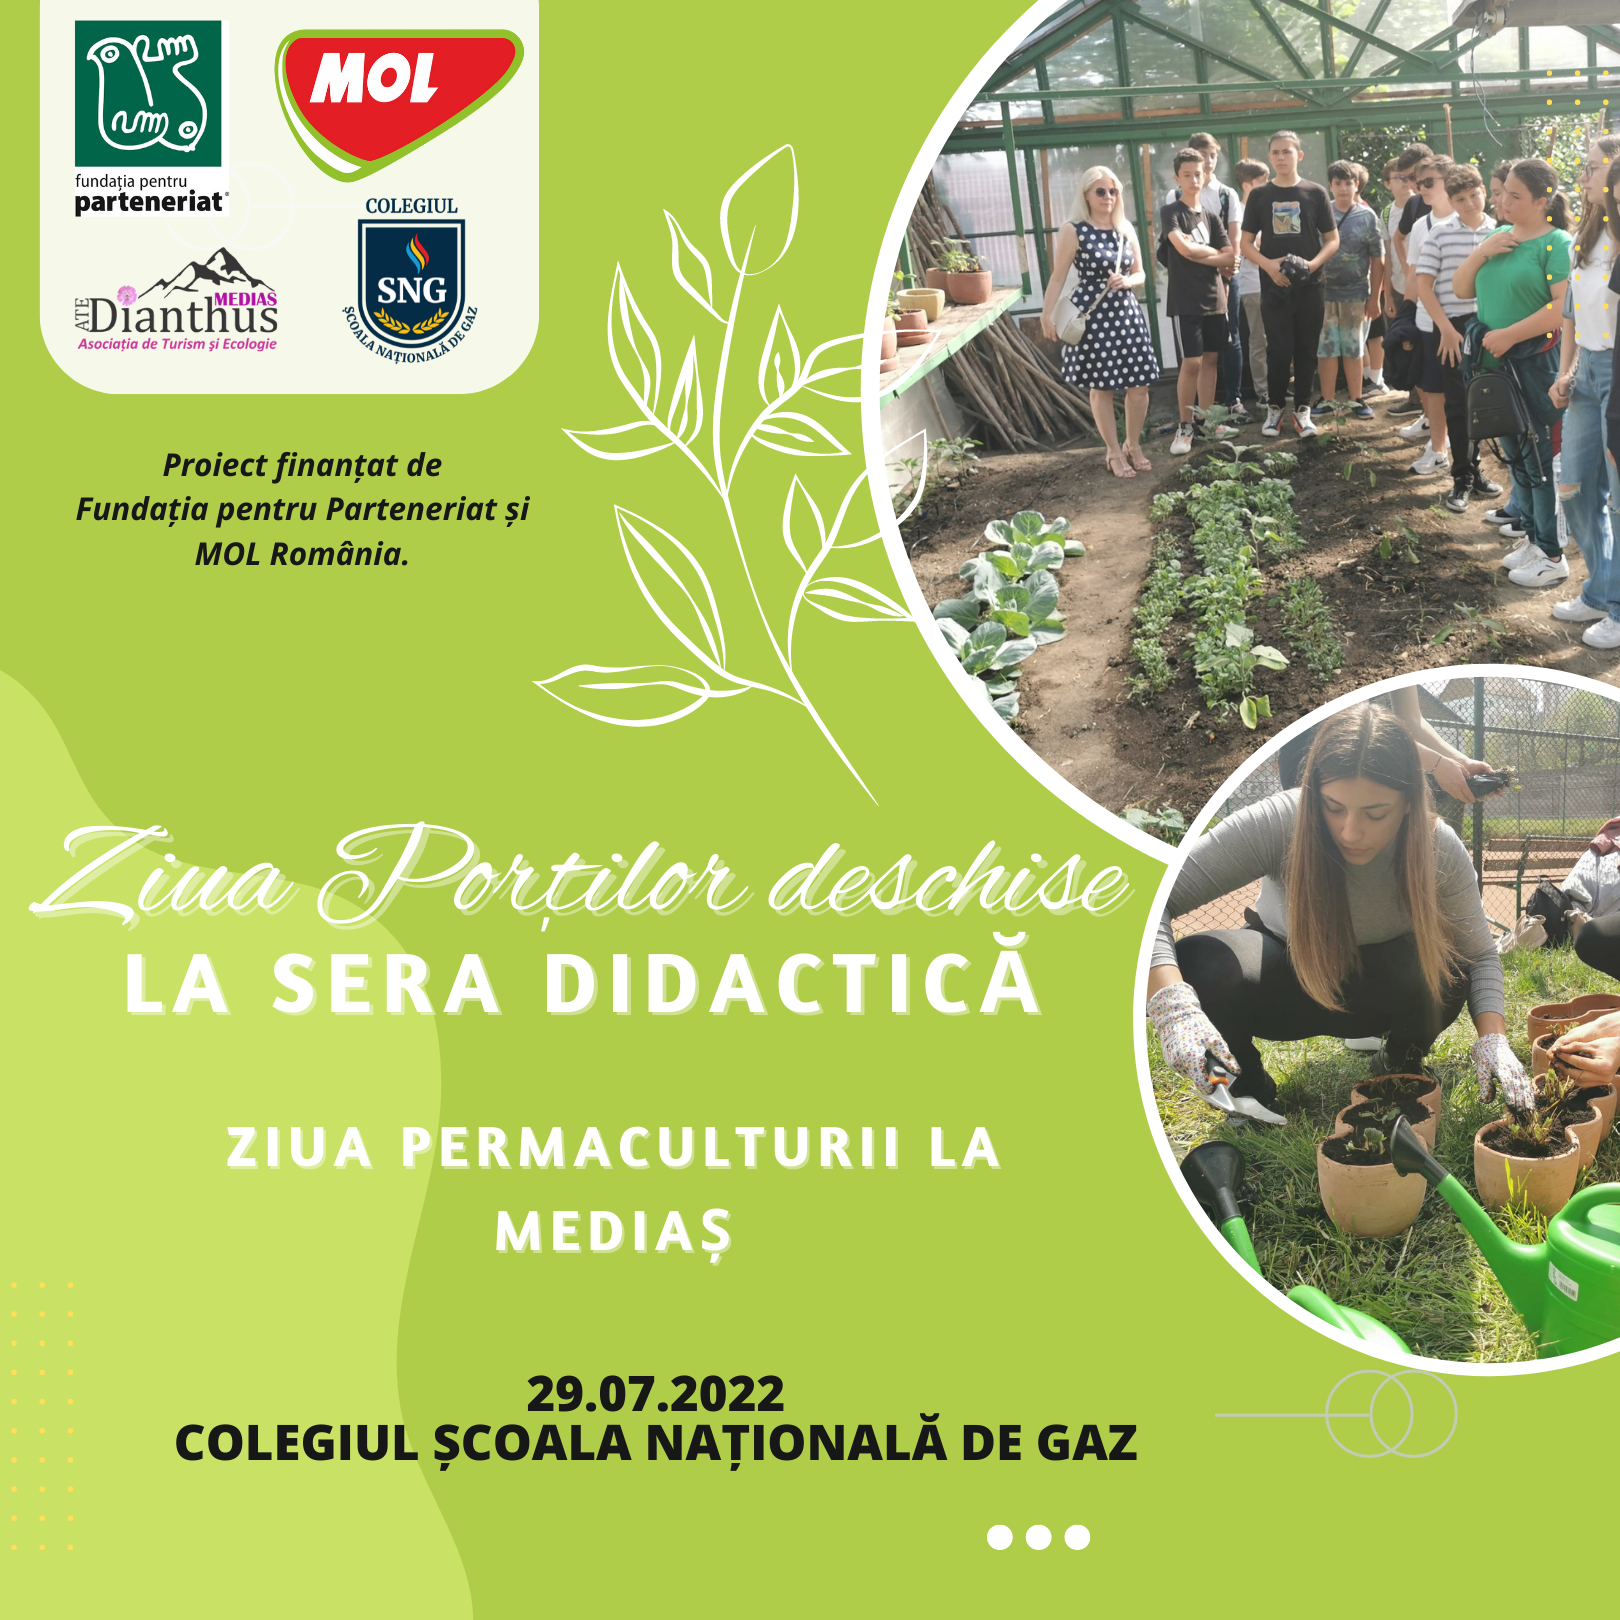 Ziua Portilor Deschise la Sera Didactica SNG și Ziua Permaculturii la Medias în cadrul  proiectului “Promovarea permaculturii în rândul copiilor prin ateliere de grădinărit în sera didactică“, finanțat de Fundația pentru Parteneriat și MOL România